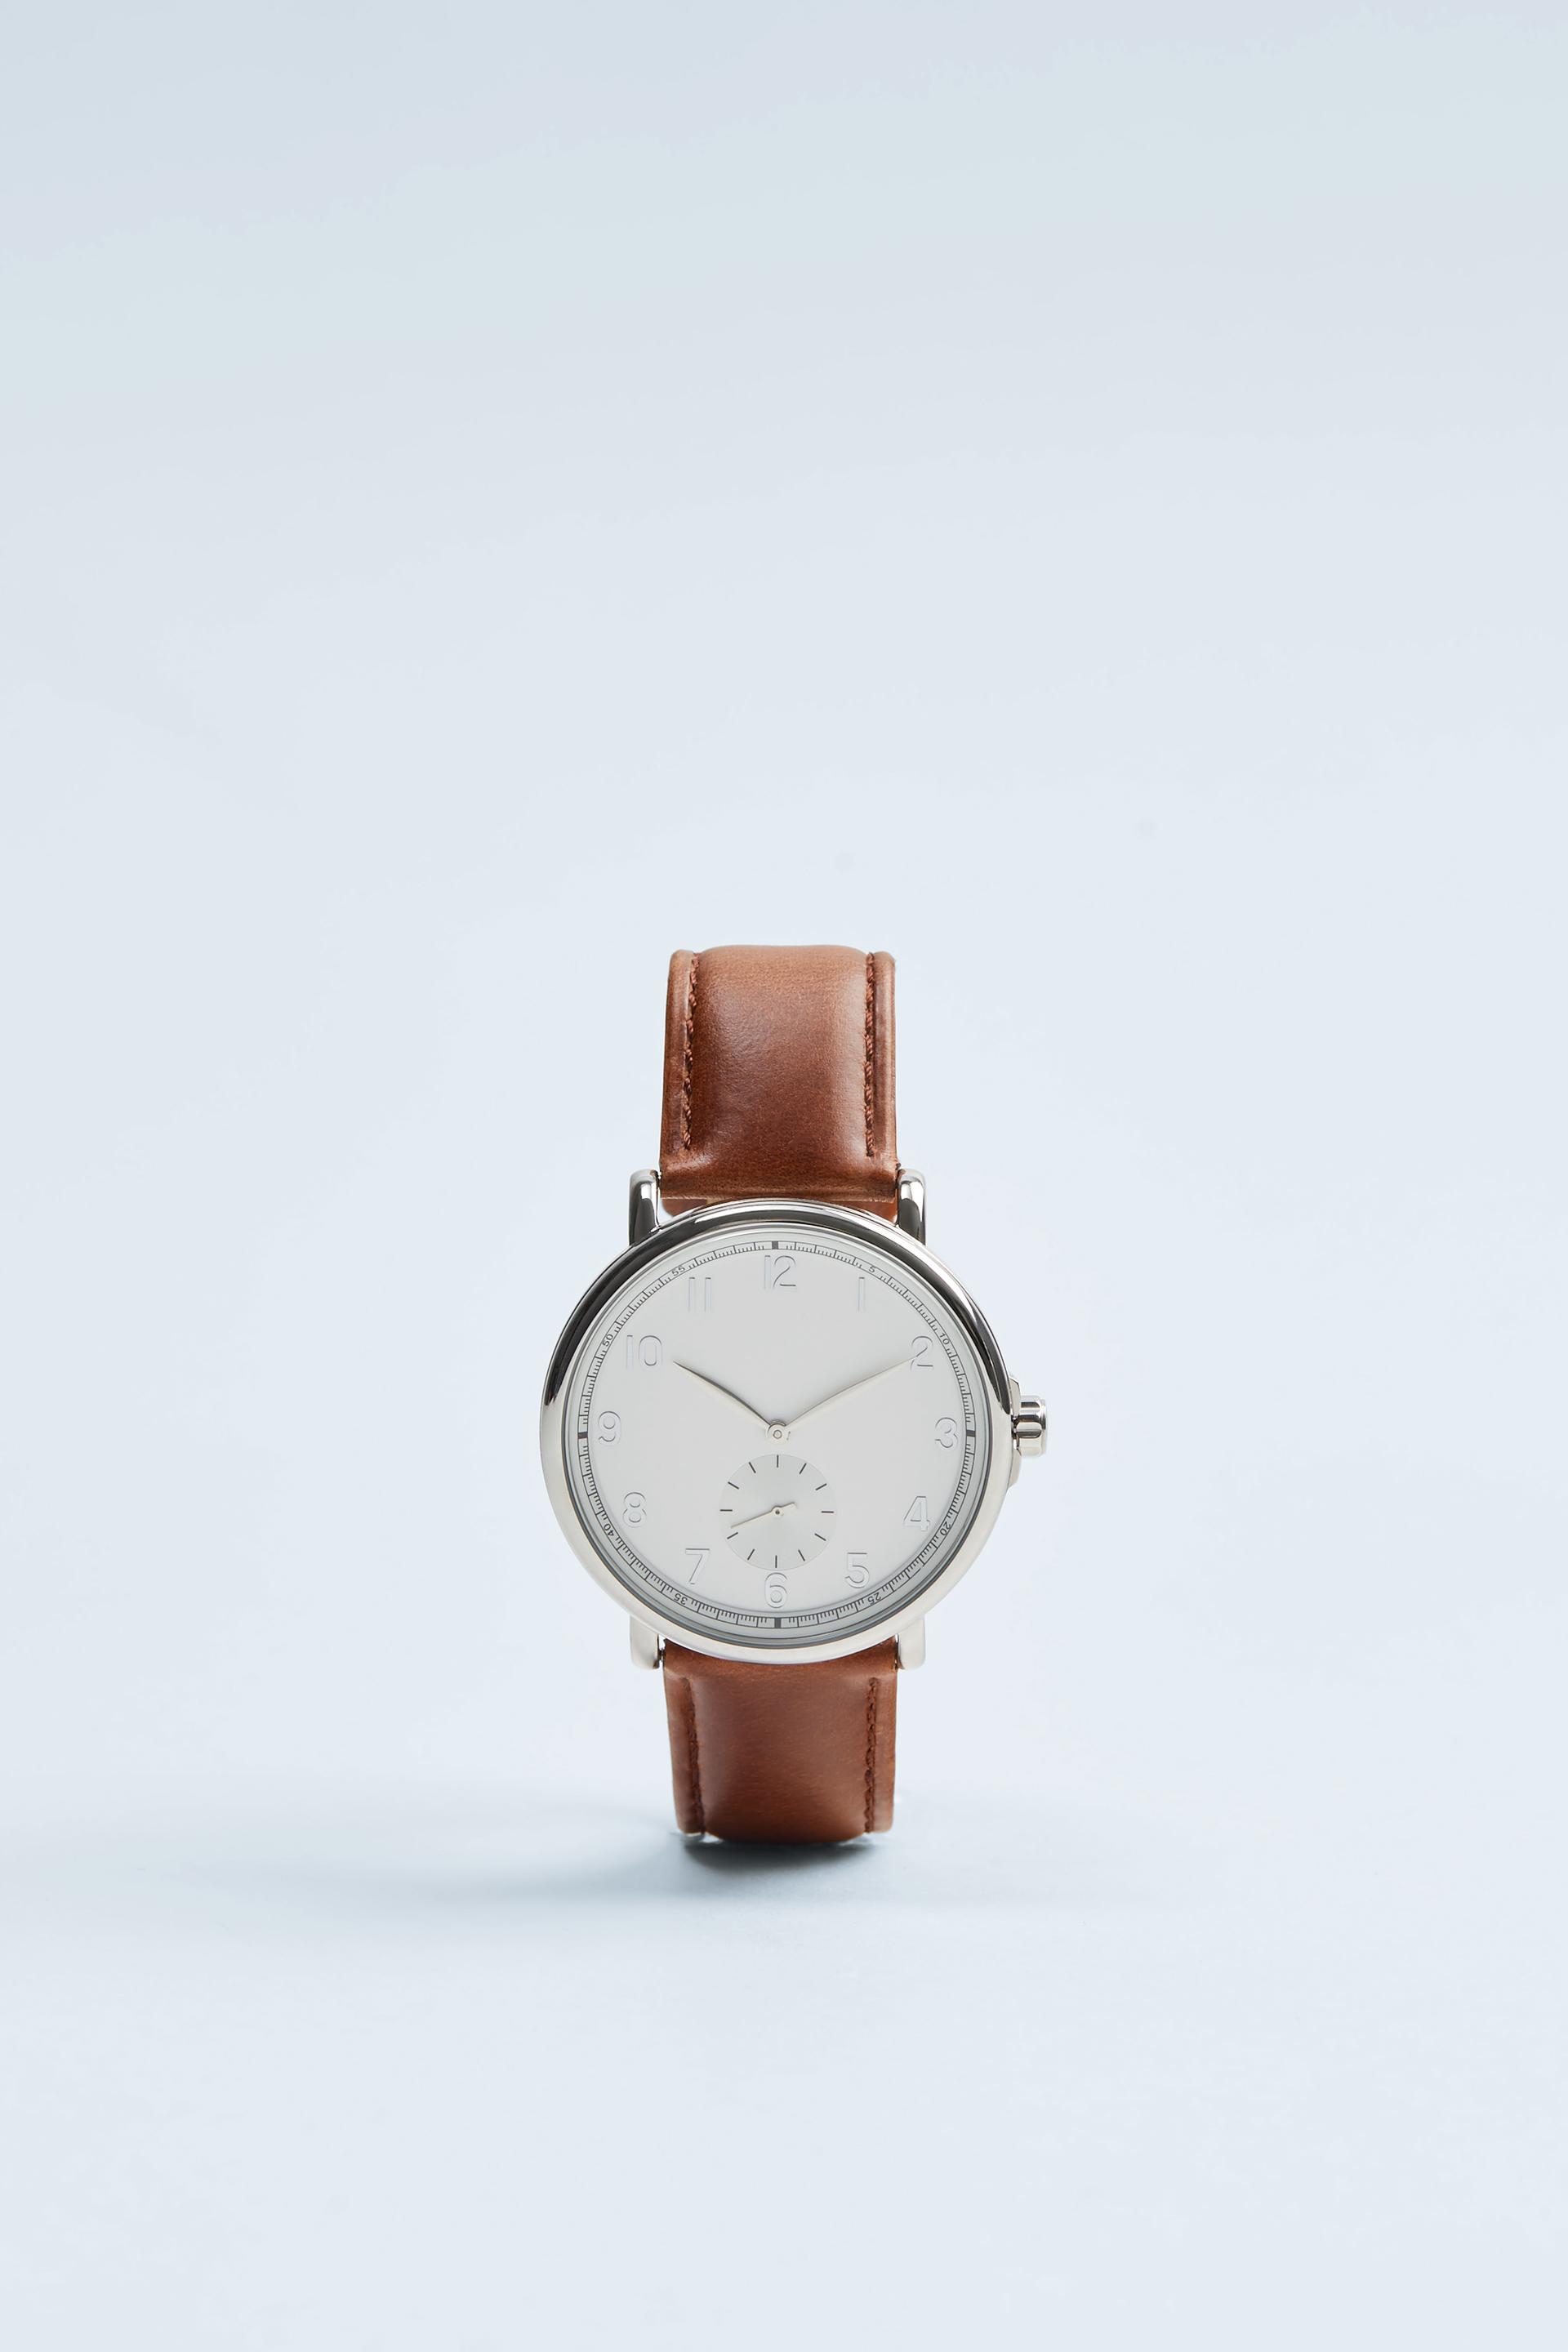 часы в винтажном стиле с коричневым кожаным ремешком ЦВЕТ ВЫДЕЛАННОЙ КОЖИ Zara